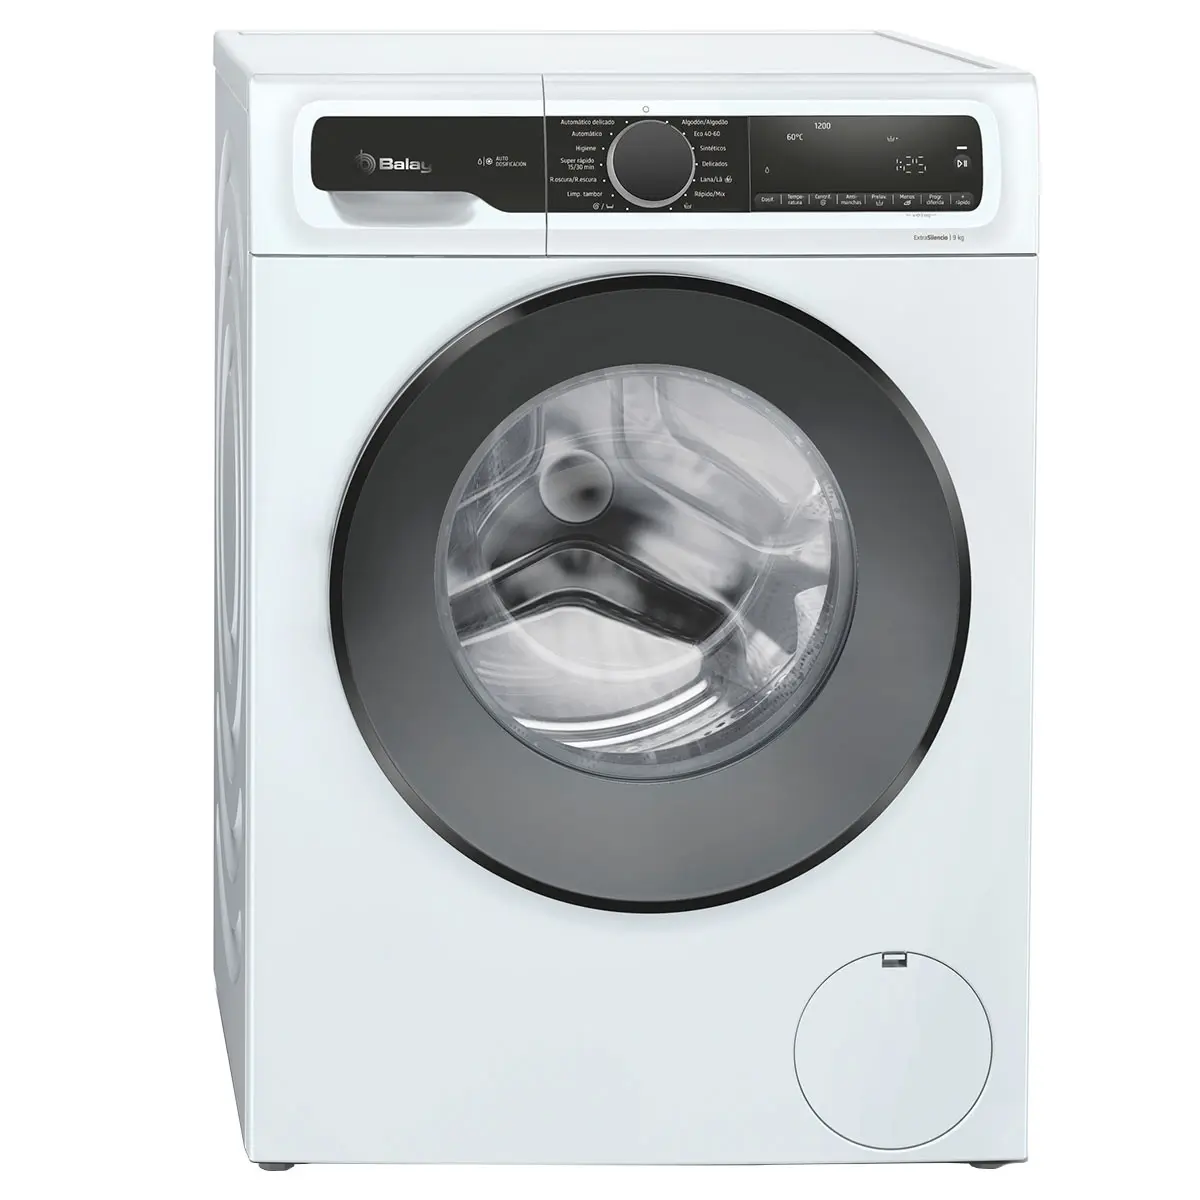 garantia lavadora balay - Cómo contactar con Balay